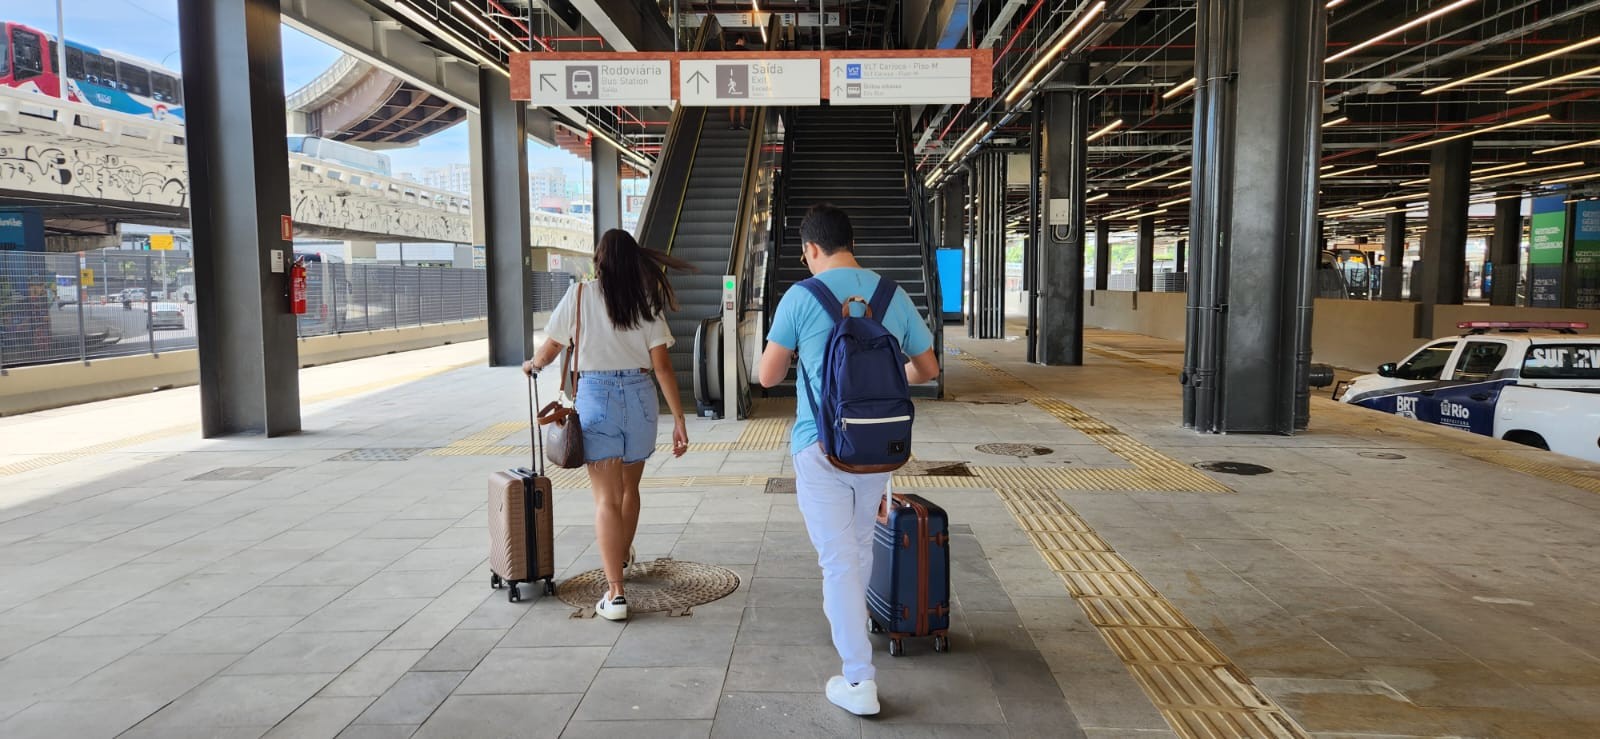 Terminal Gentileza: há escadas rolantes, rampas e elevadores que oferecem acessibilidade — Foto: Custódio Coimbra/Agência O Globo